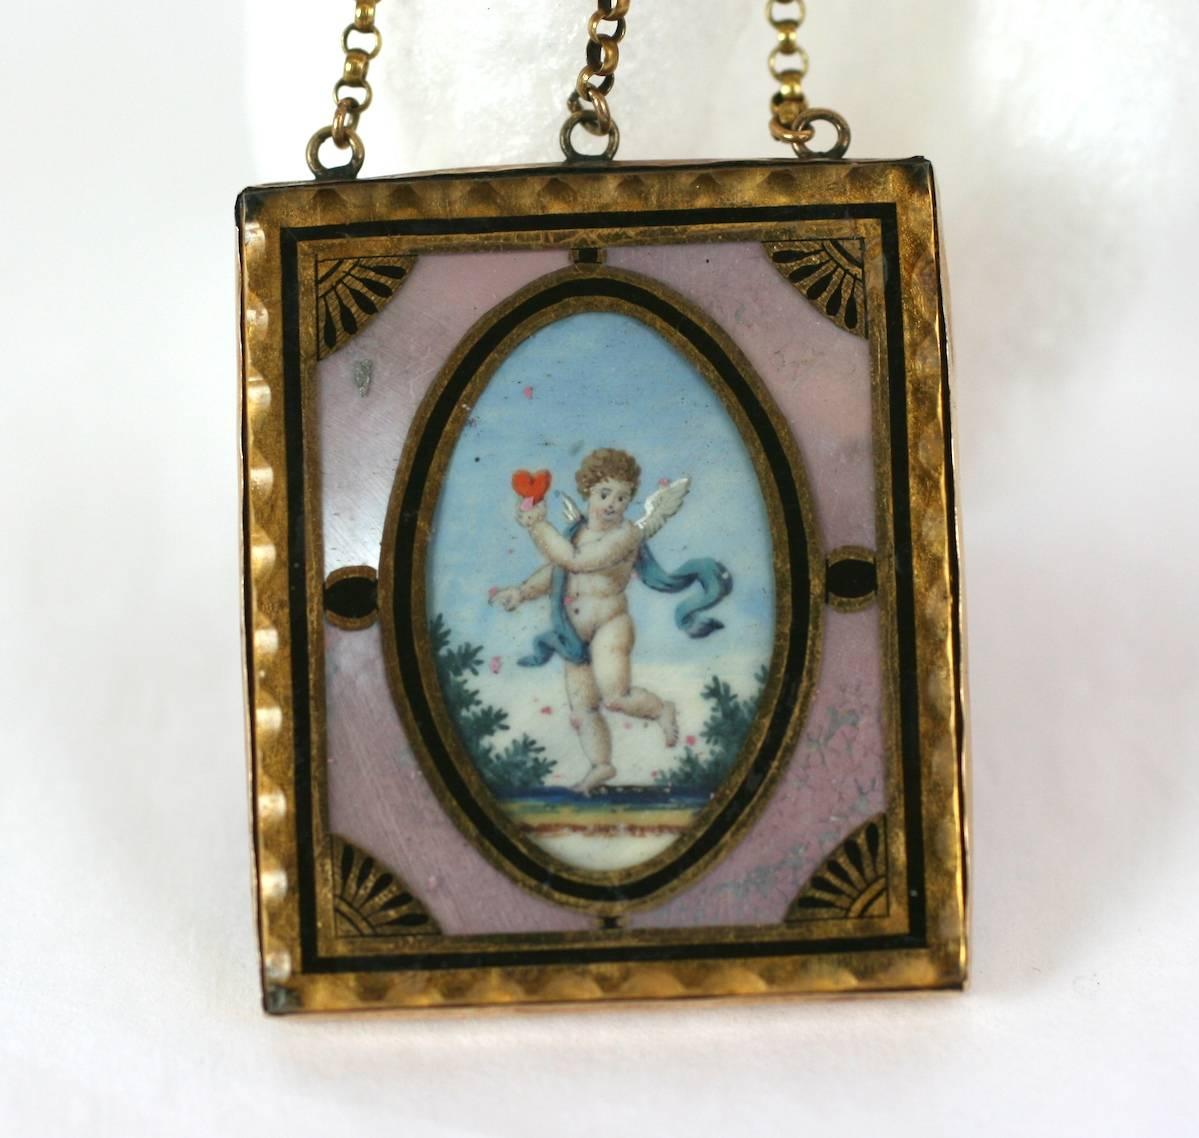 Charmant et rare pendentif jeton d'amour du 18ème siècle,  aquarelle peinte à la main représentant un ange portant un coeur rouge, placée sous verre dans un cadre en verre églomisé. La miniature magnifiquement détaillée est enchâssée dans de la